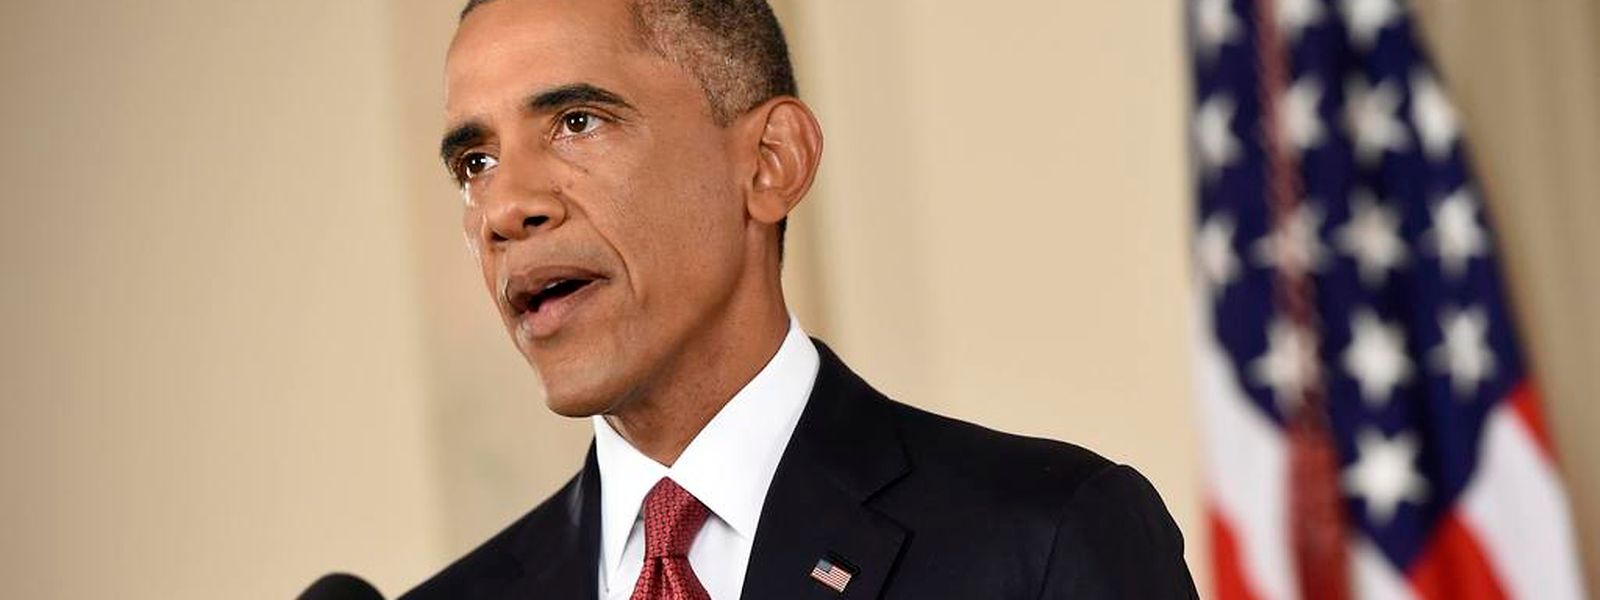 Bei seiner Fernsehrede schwor Obama sein Land auf einen neuen Kampf gegen den Terror ein.